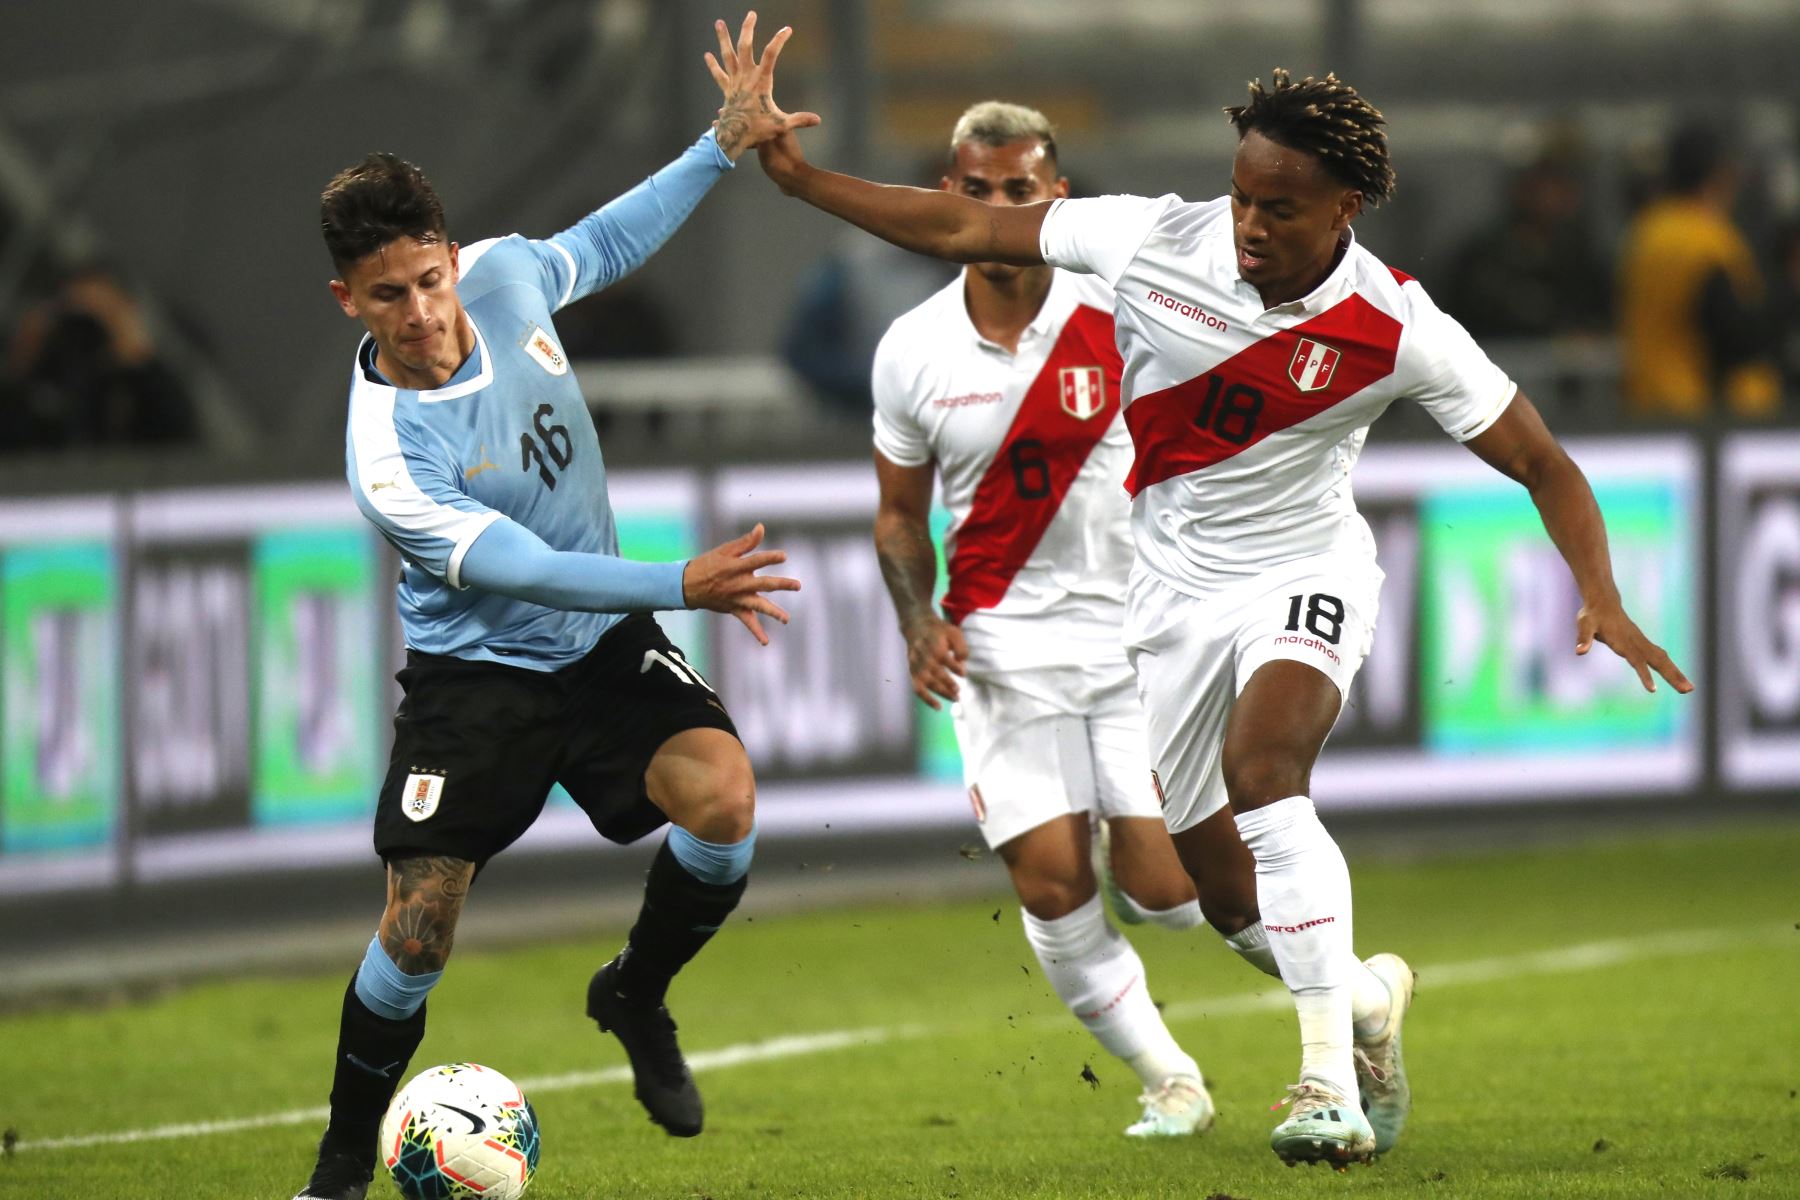 ndré Carrillo de Perú disputa la pelota con Brian Rodríguez de Uruguay durante el partido amistoso en el Estadio Nacional de Lima. Foto: ANDINA/ Carlos Lezama